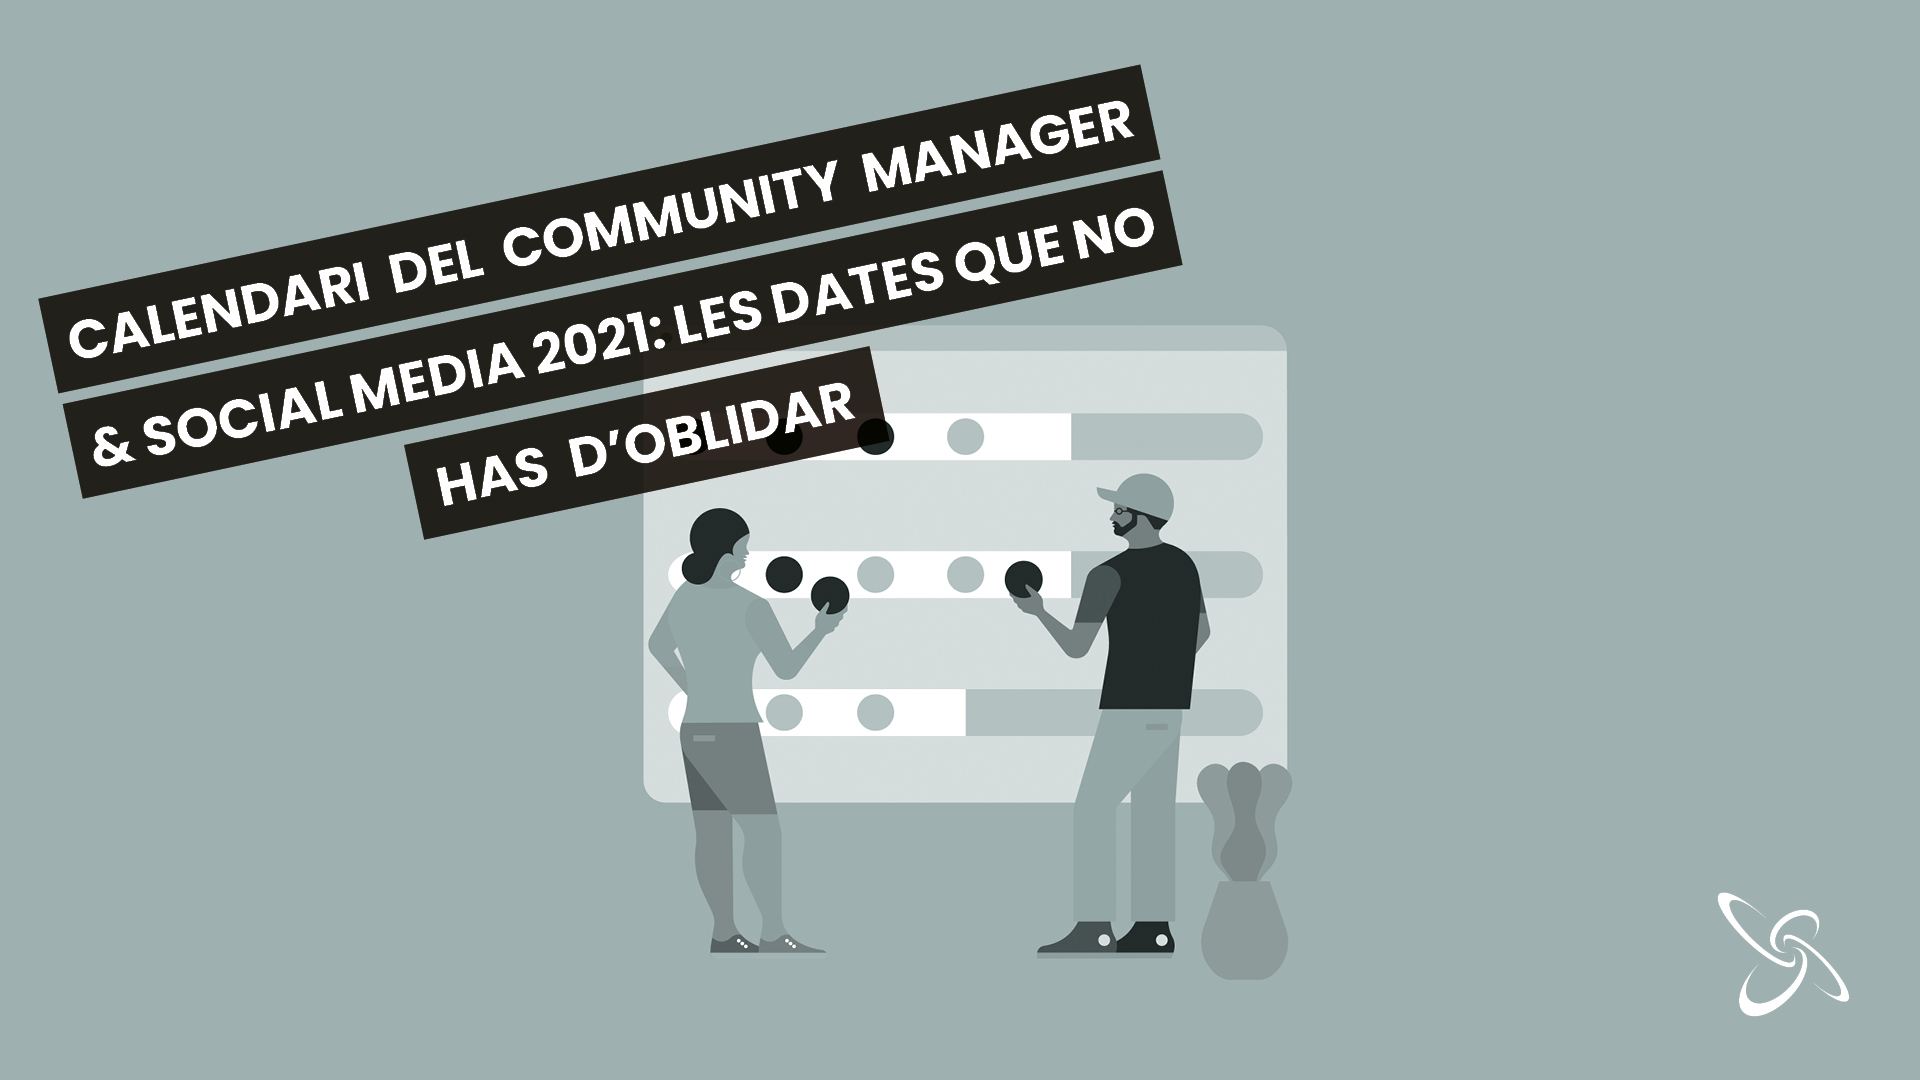 Calendari del Community Manager & Social Media 2021